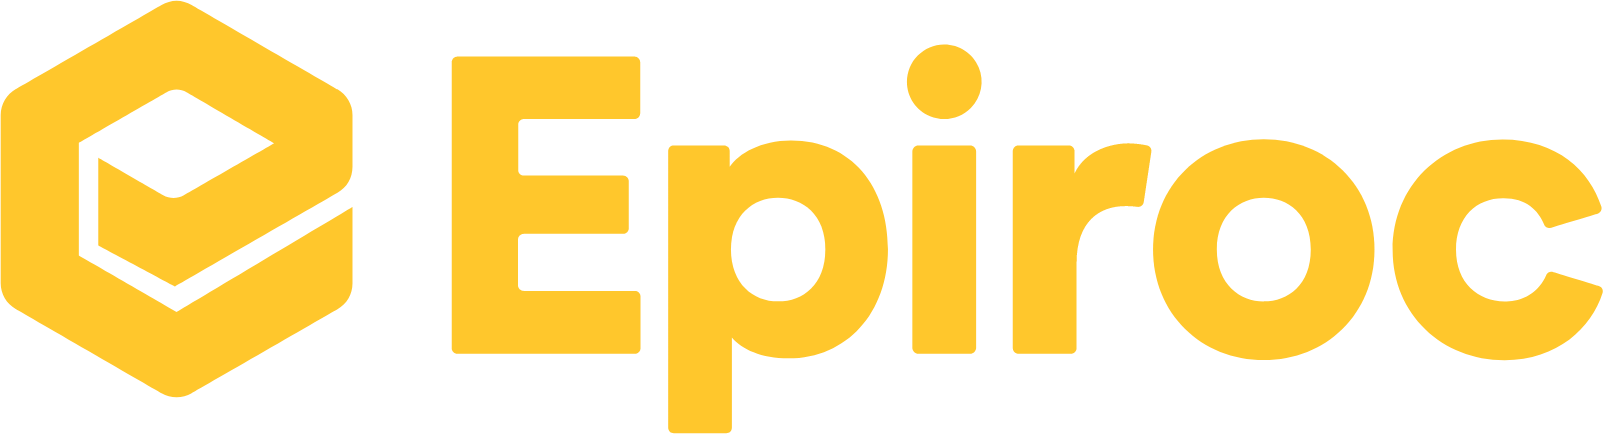 Epiroc logo large (transparent PNG)